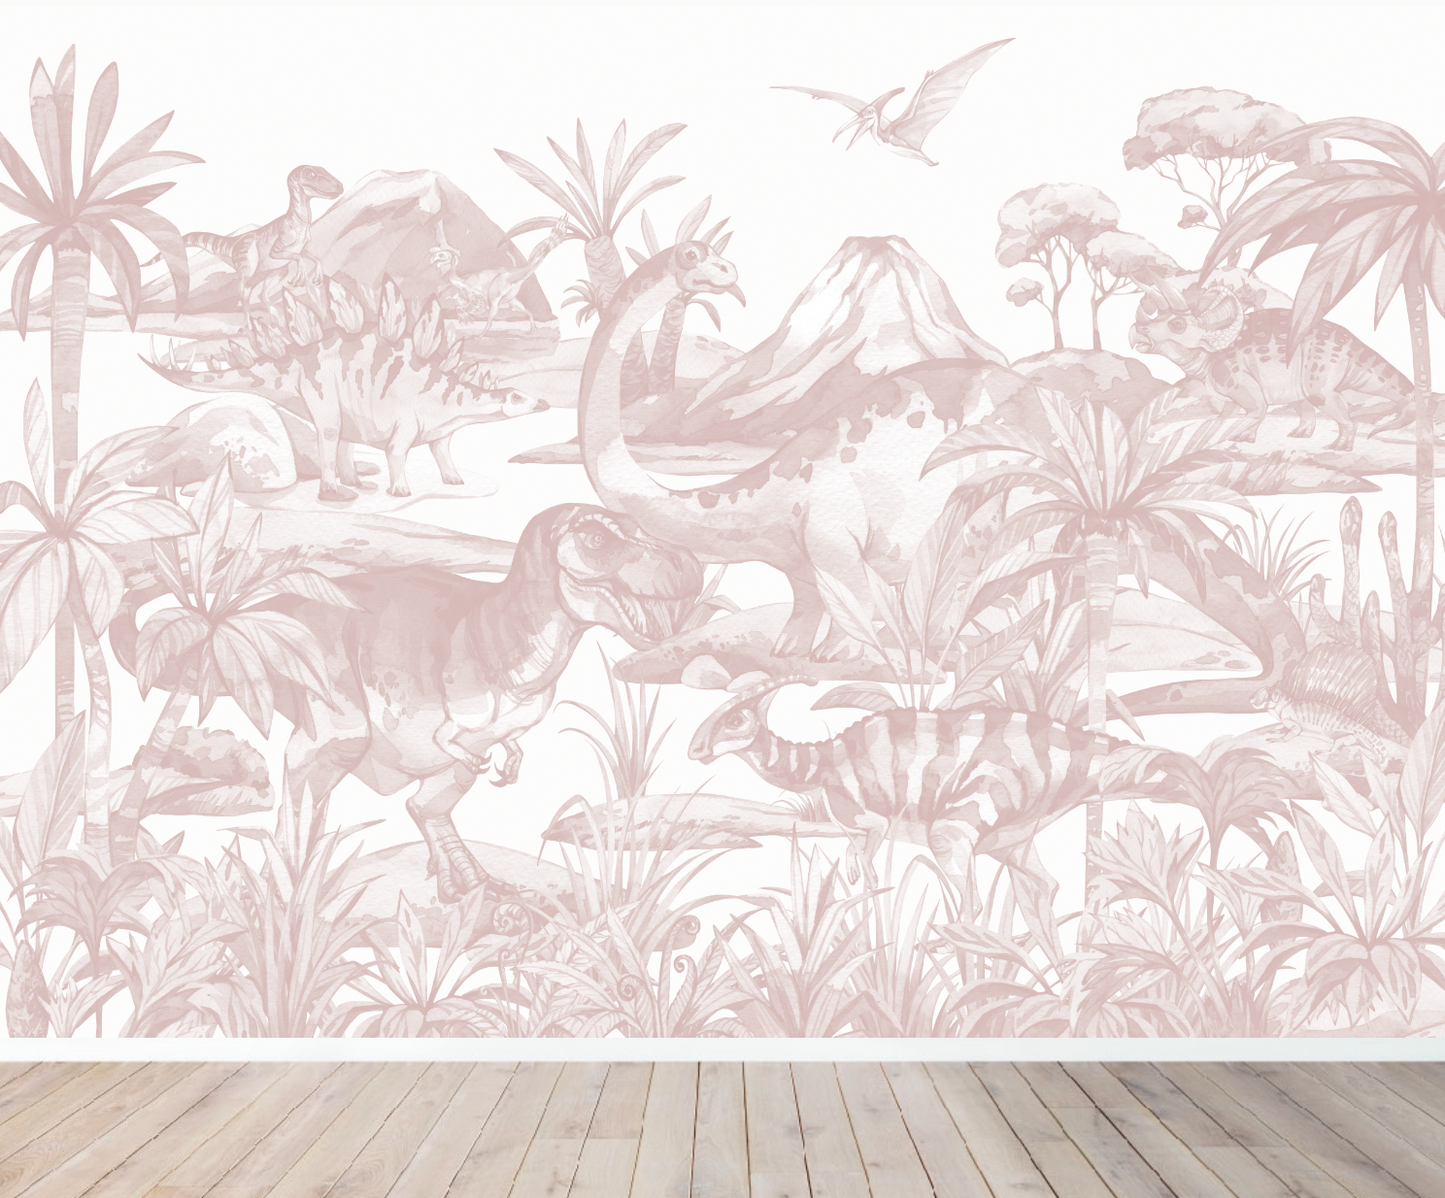 Dinosaur World Wallpaper Mural | Rose - Munks and Me Wallpaper